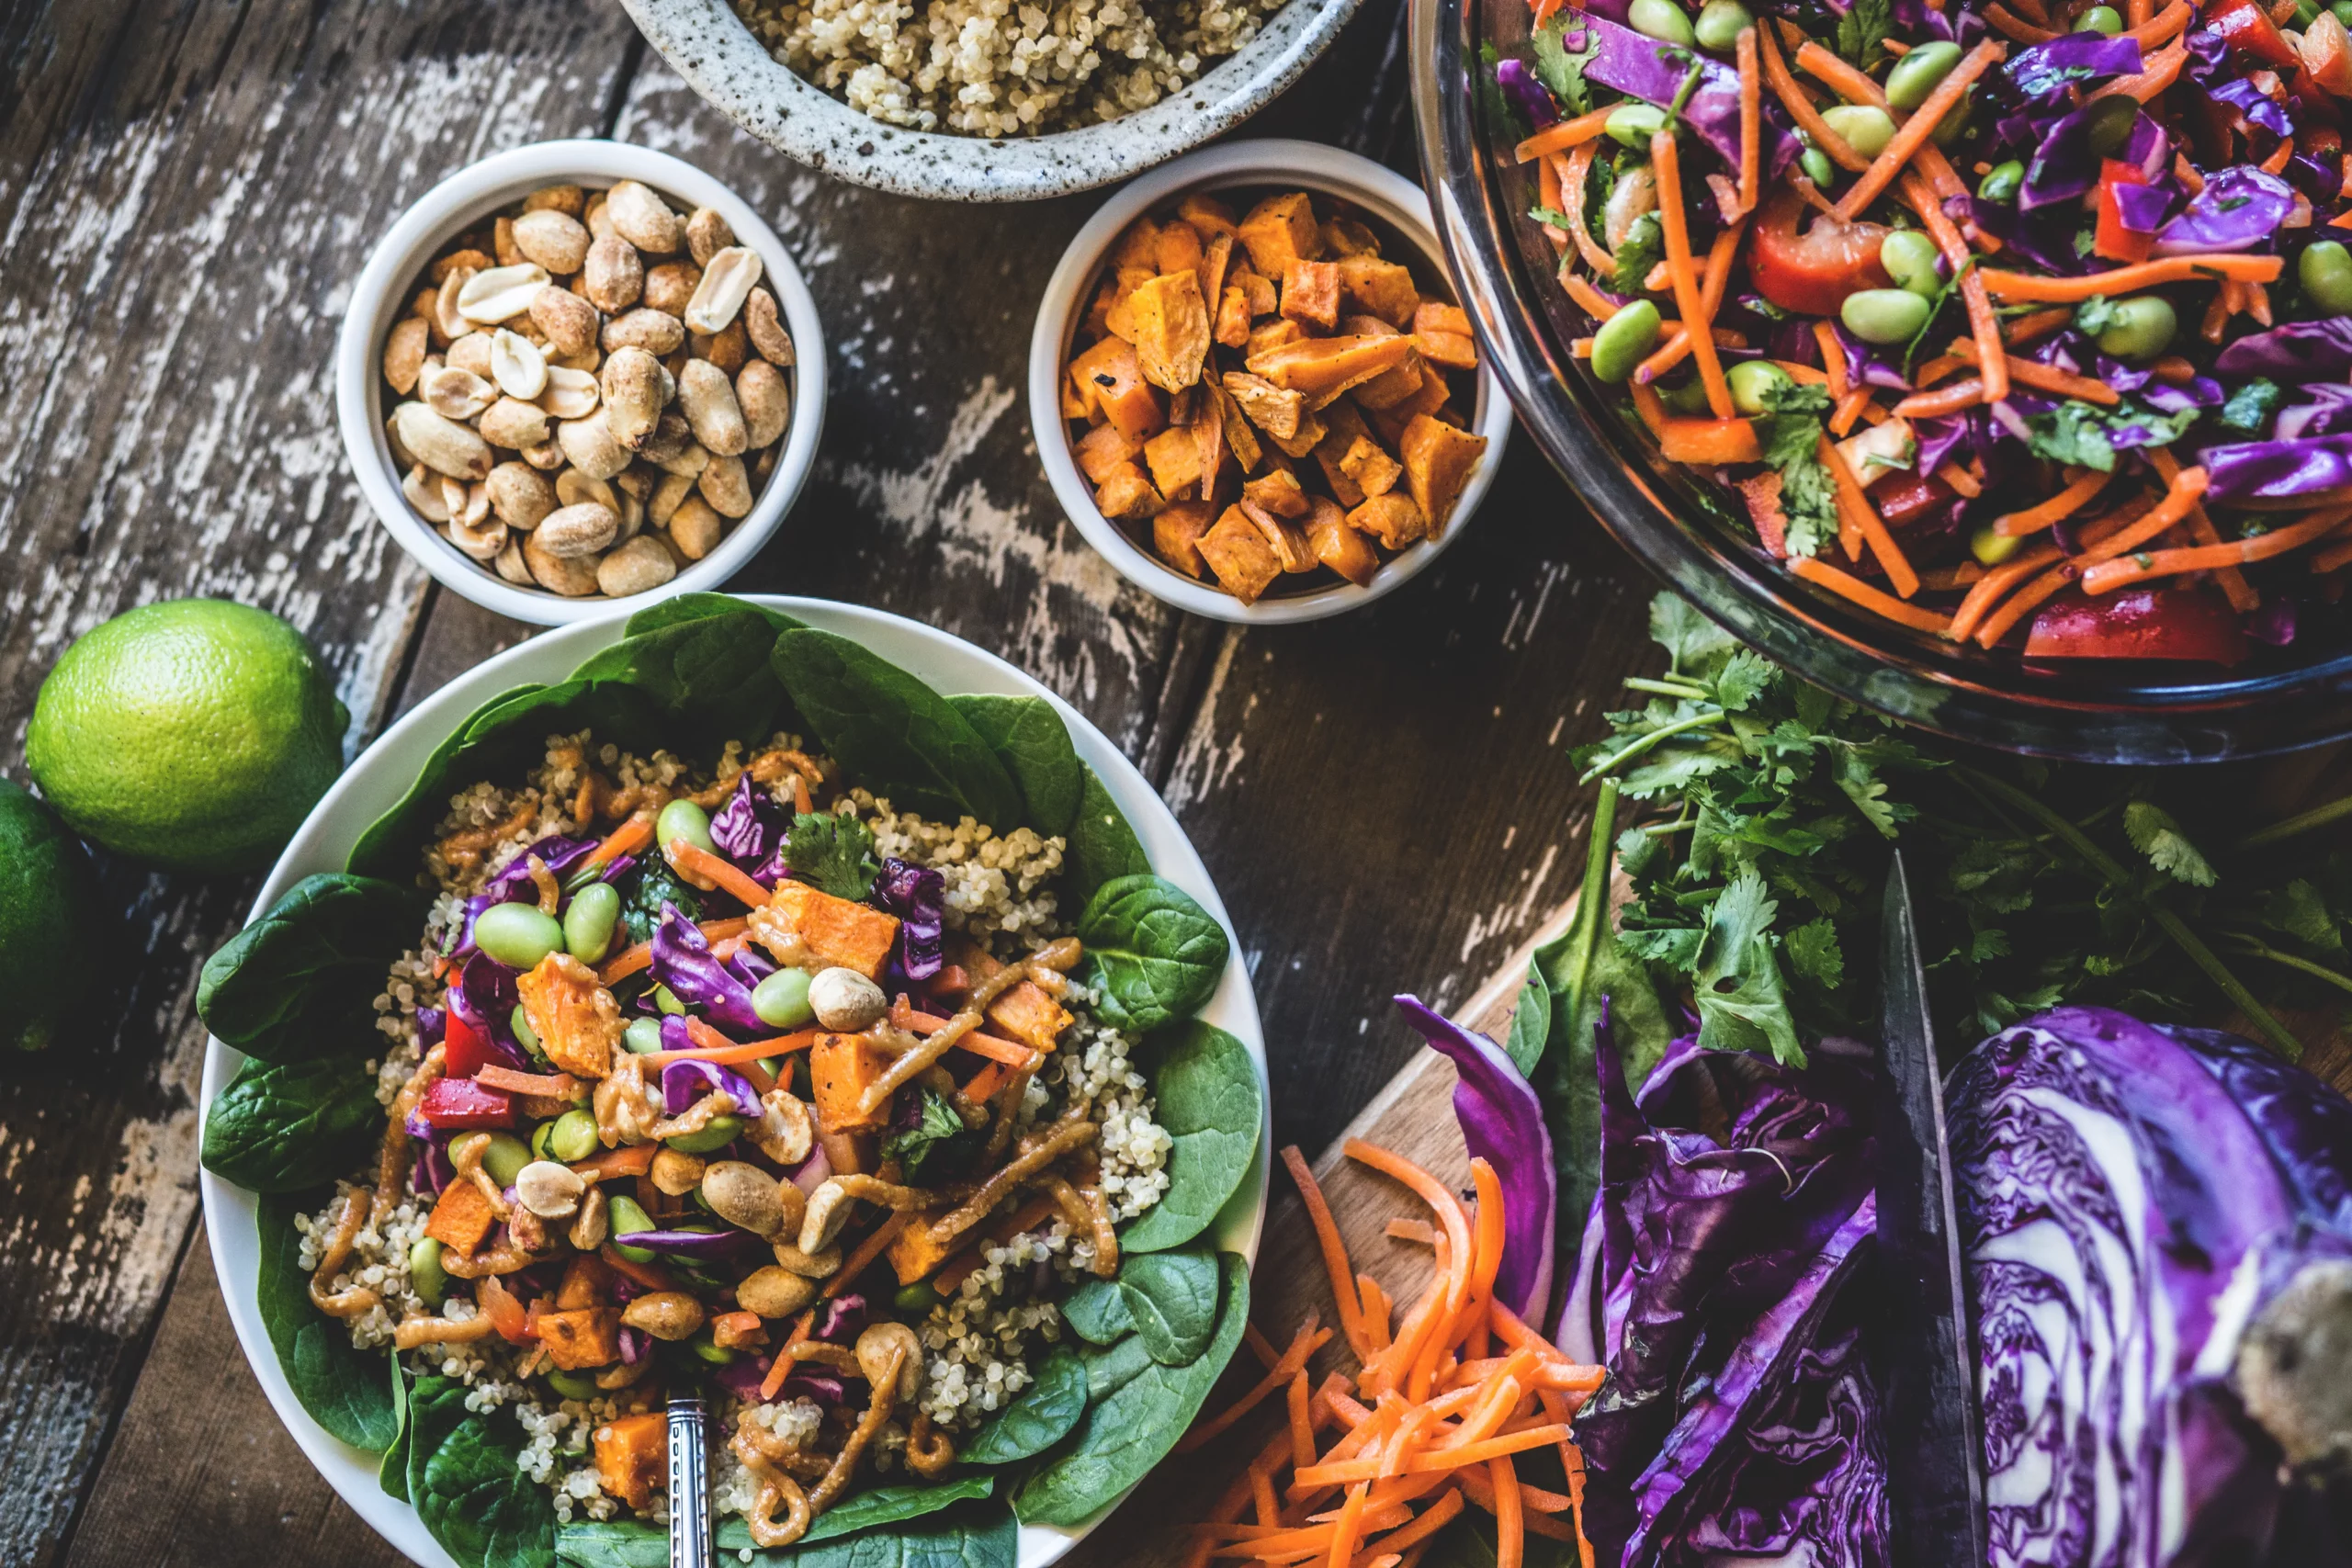 Pflanzenbasierte Ernährung: vegane Bowl und weitere Beilagen auf einem Holztisch